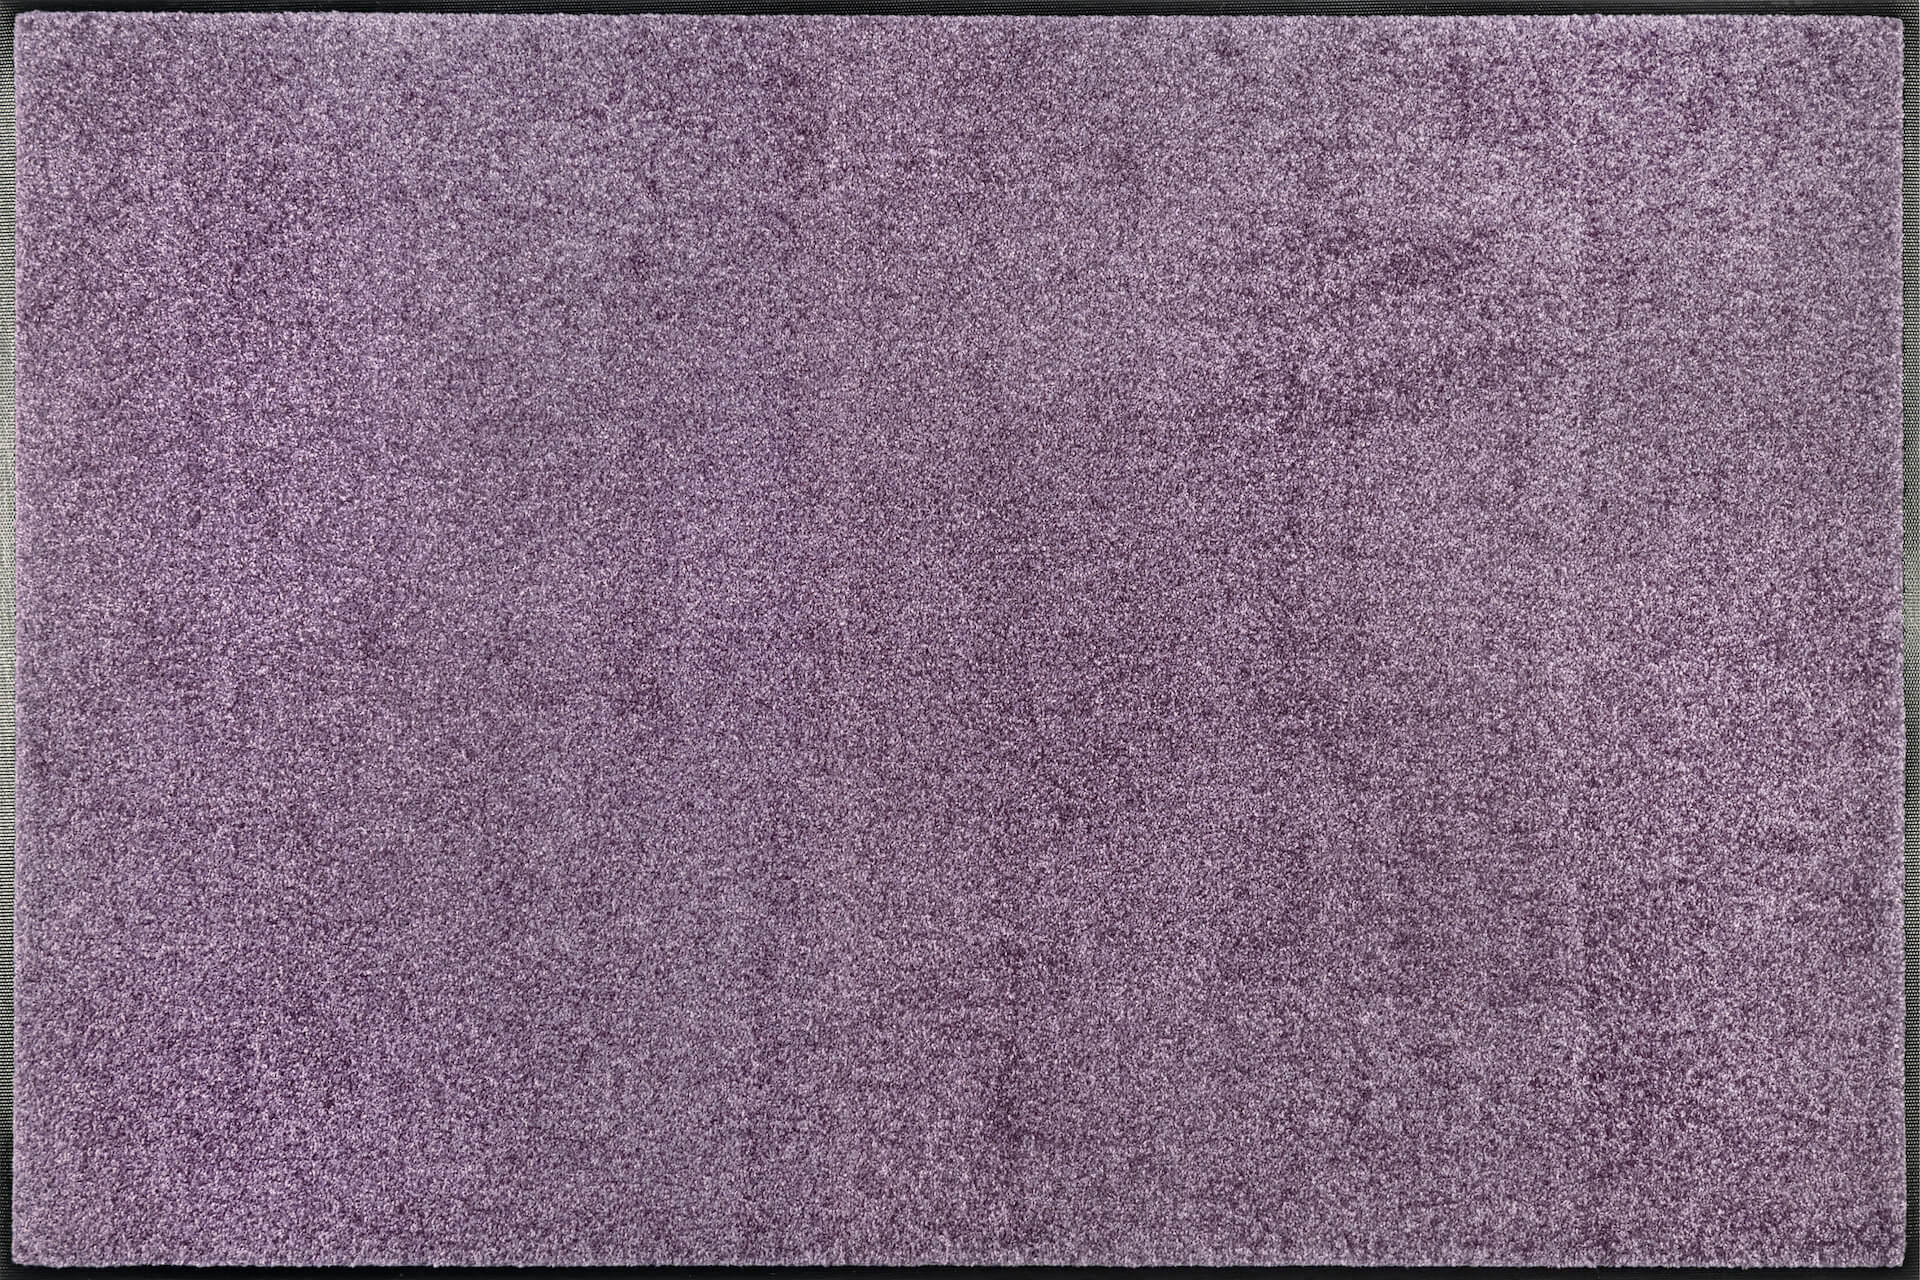 Fußmatte uni TC_Lavender Mist, Wash & Dry Trend Colour, 120 x 180 cm, Draufsicht